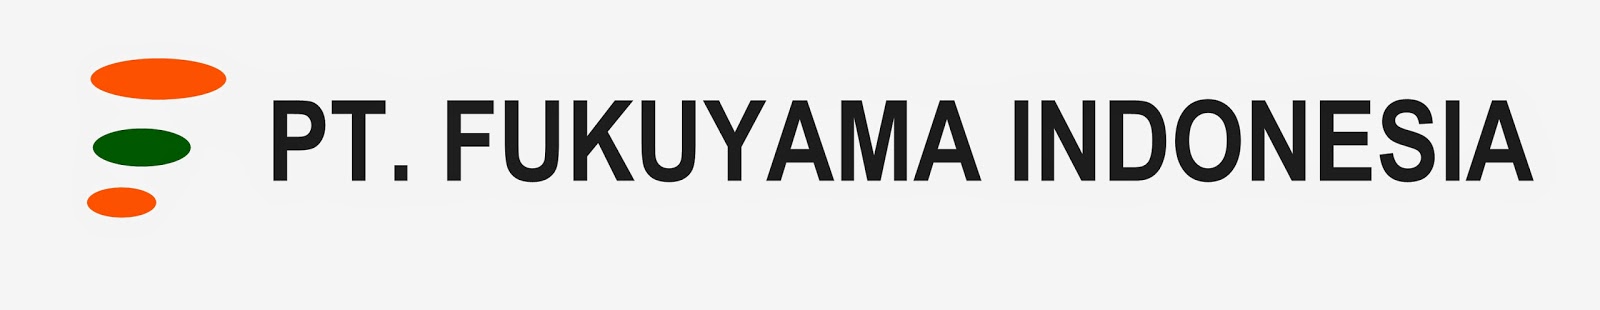 Lowongan PT Fukuyama Indonesia Untuk Bulan Oktober 2017 Plant MM2100 Bekasi